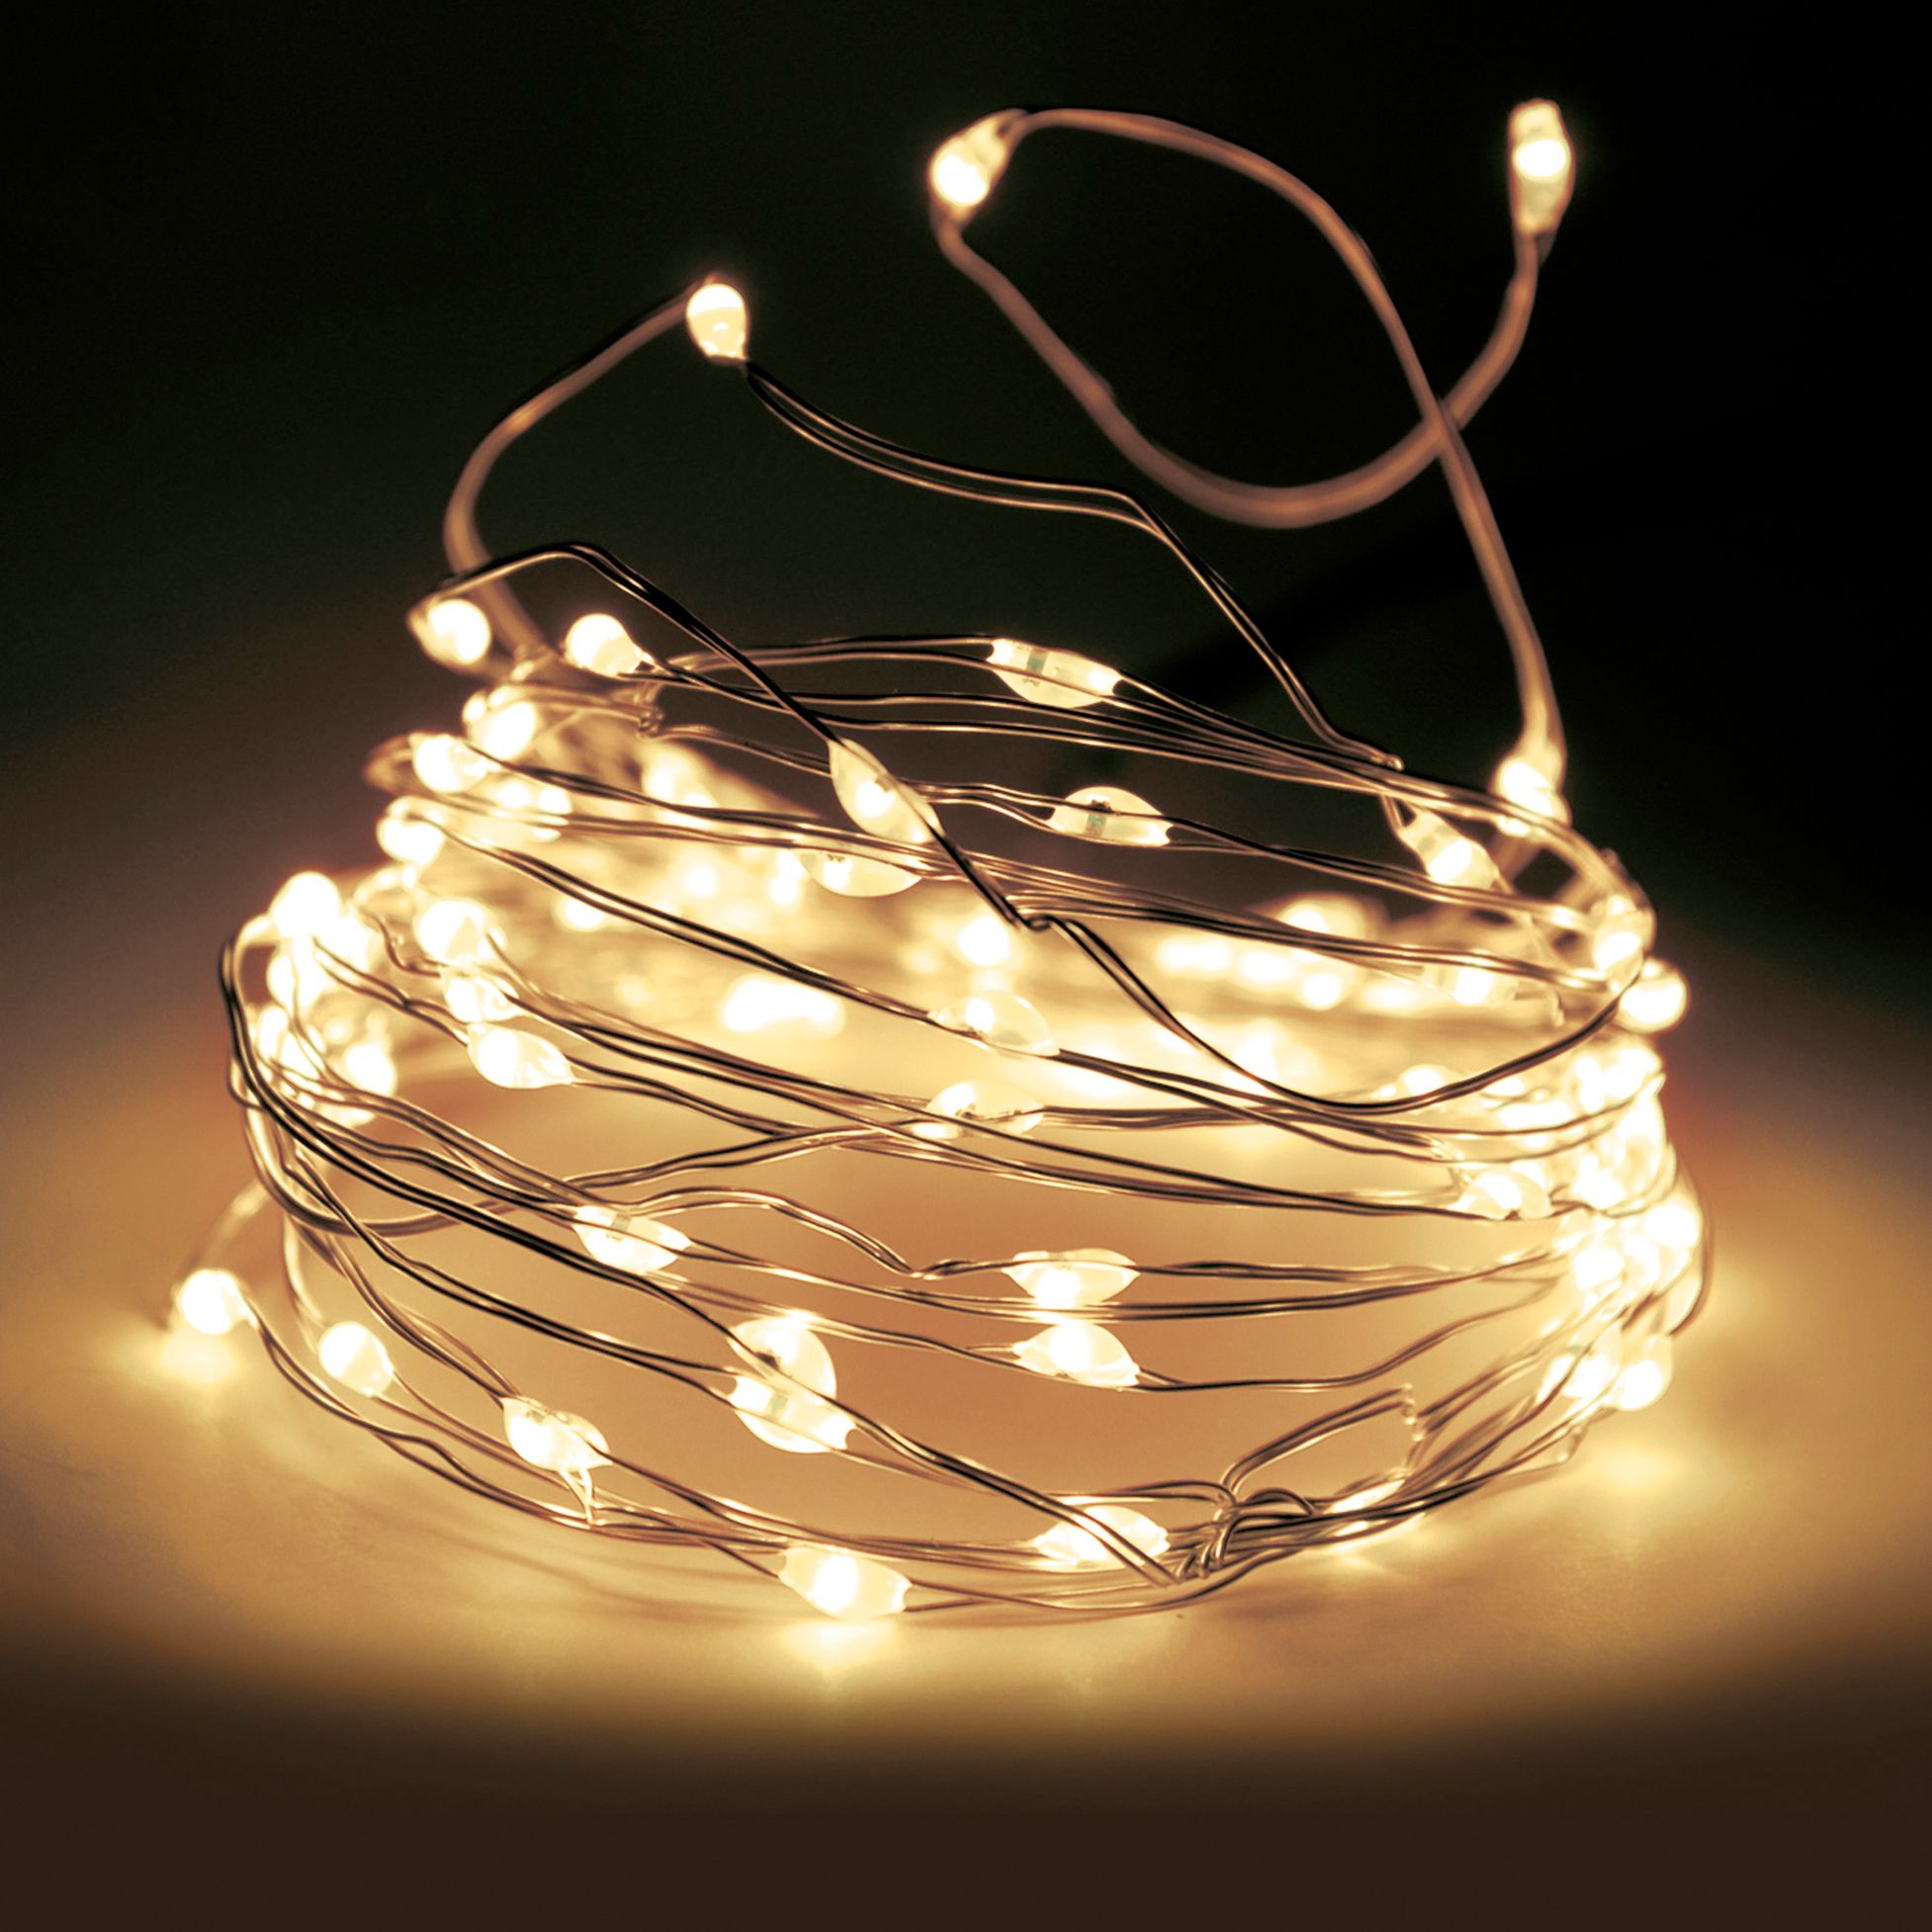 Deco LED Eclairage - L'harmonie de l'ambiance lumineuse à économie d'énergie